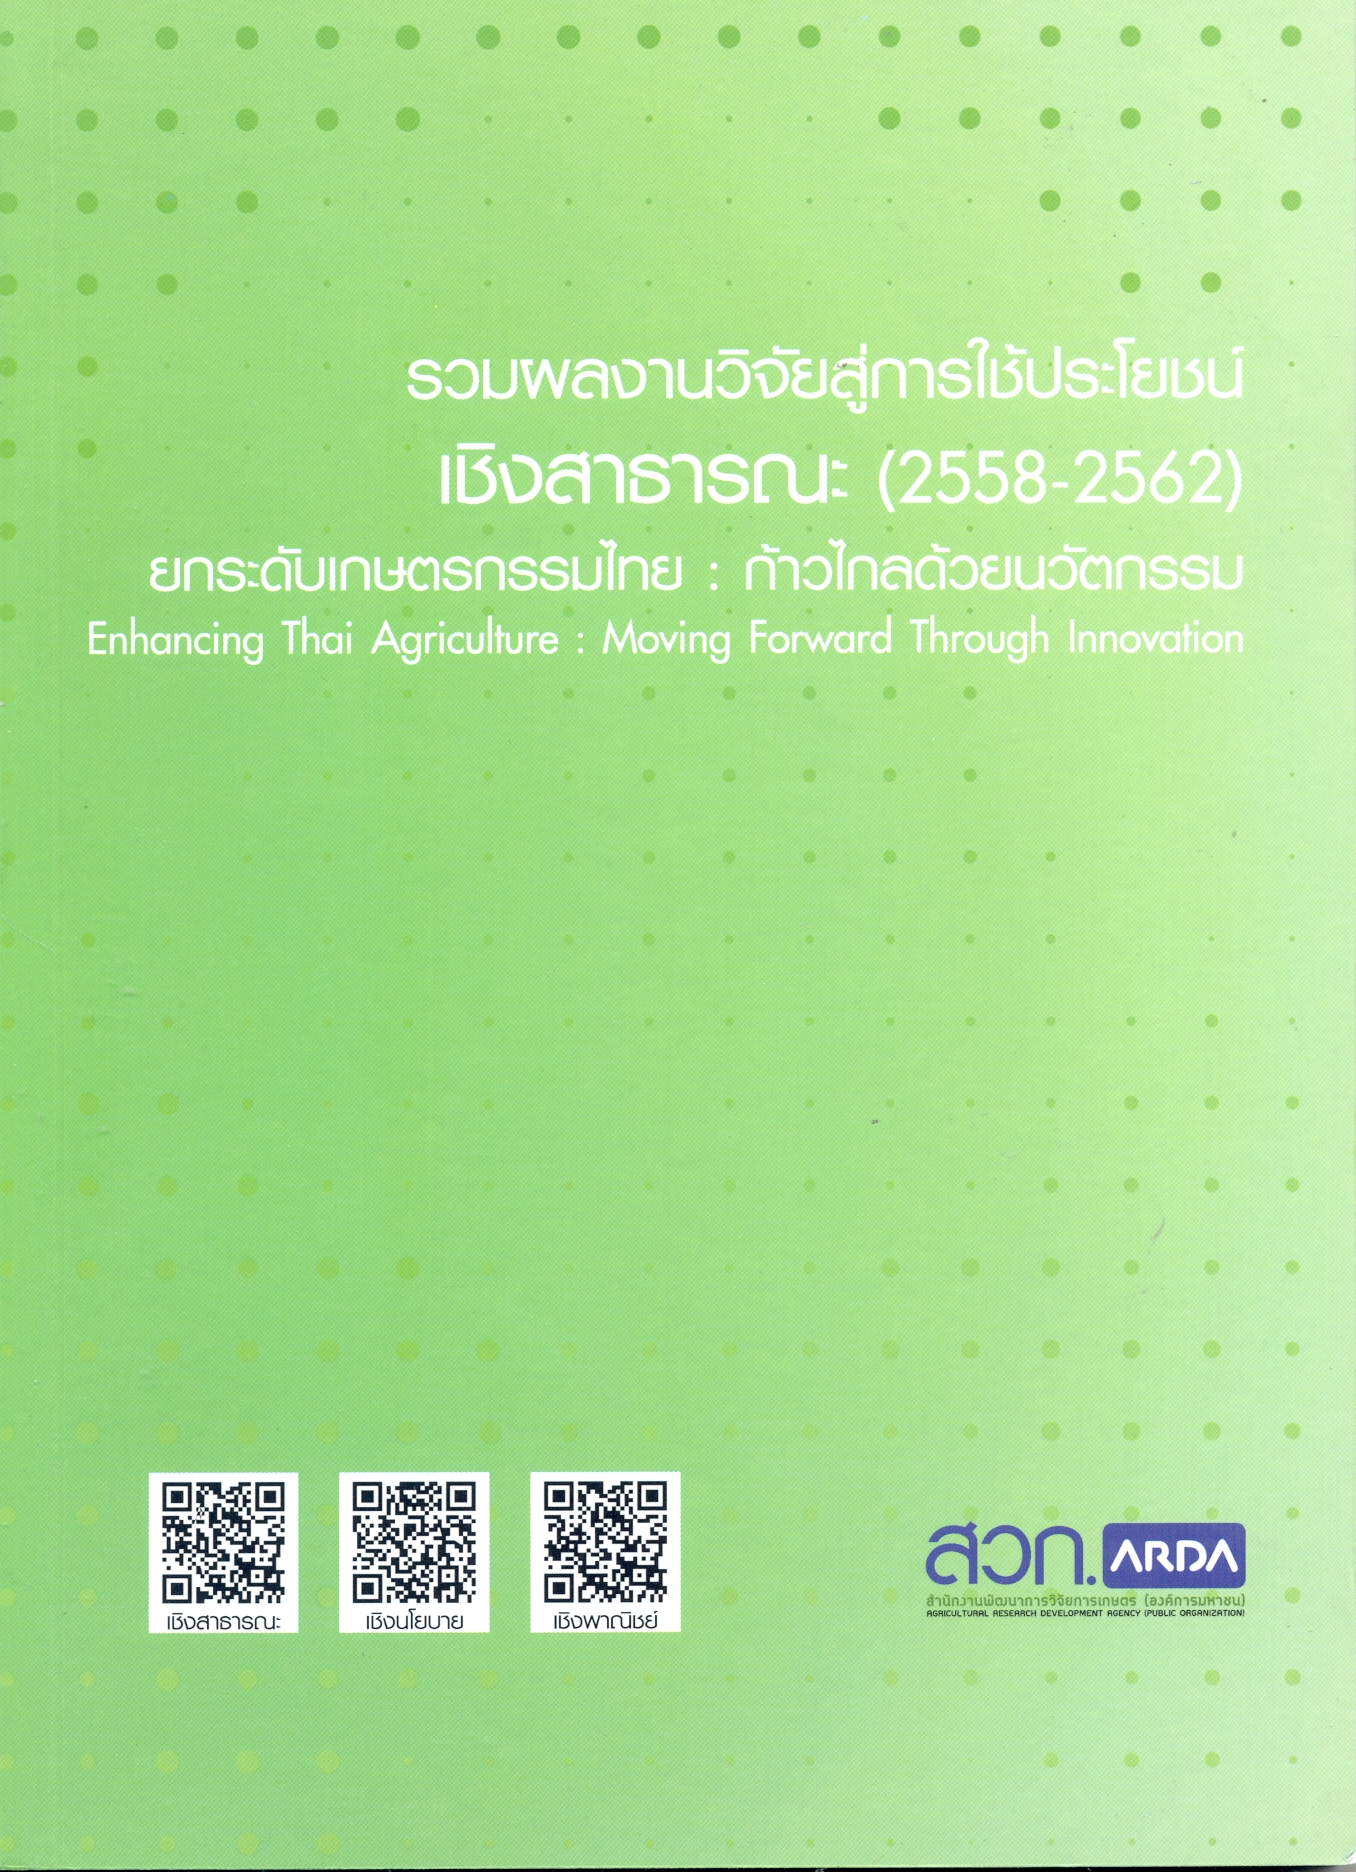 รวมผลงานวิจัยสู่การใช้ประโยชน์เชิงสาธารณะ (2558-2562) ยกระดับเกษตรกรรมไทย : ก้าวไกลด้วยนวัตกรรม.